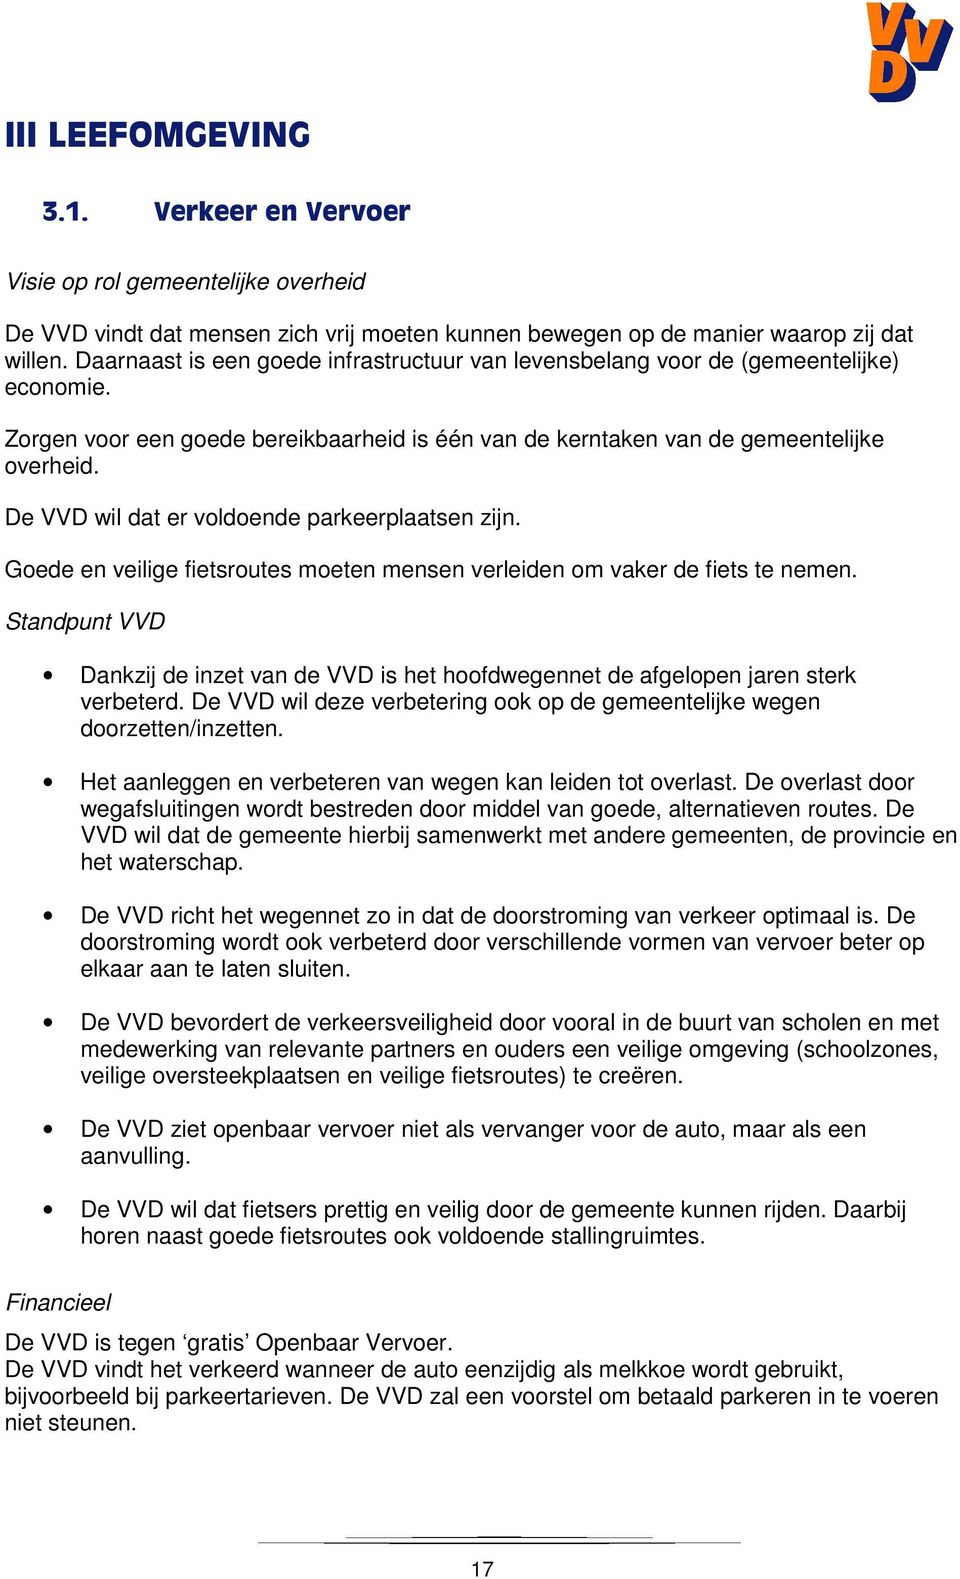 De VVD wil dat er voldoende parkeerplaatsen zijn. Goede en veilige fietsroutes moeten mensen verleiden om vaker de fiets te nemen.